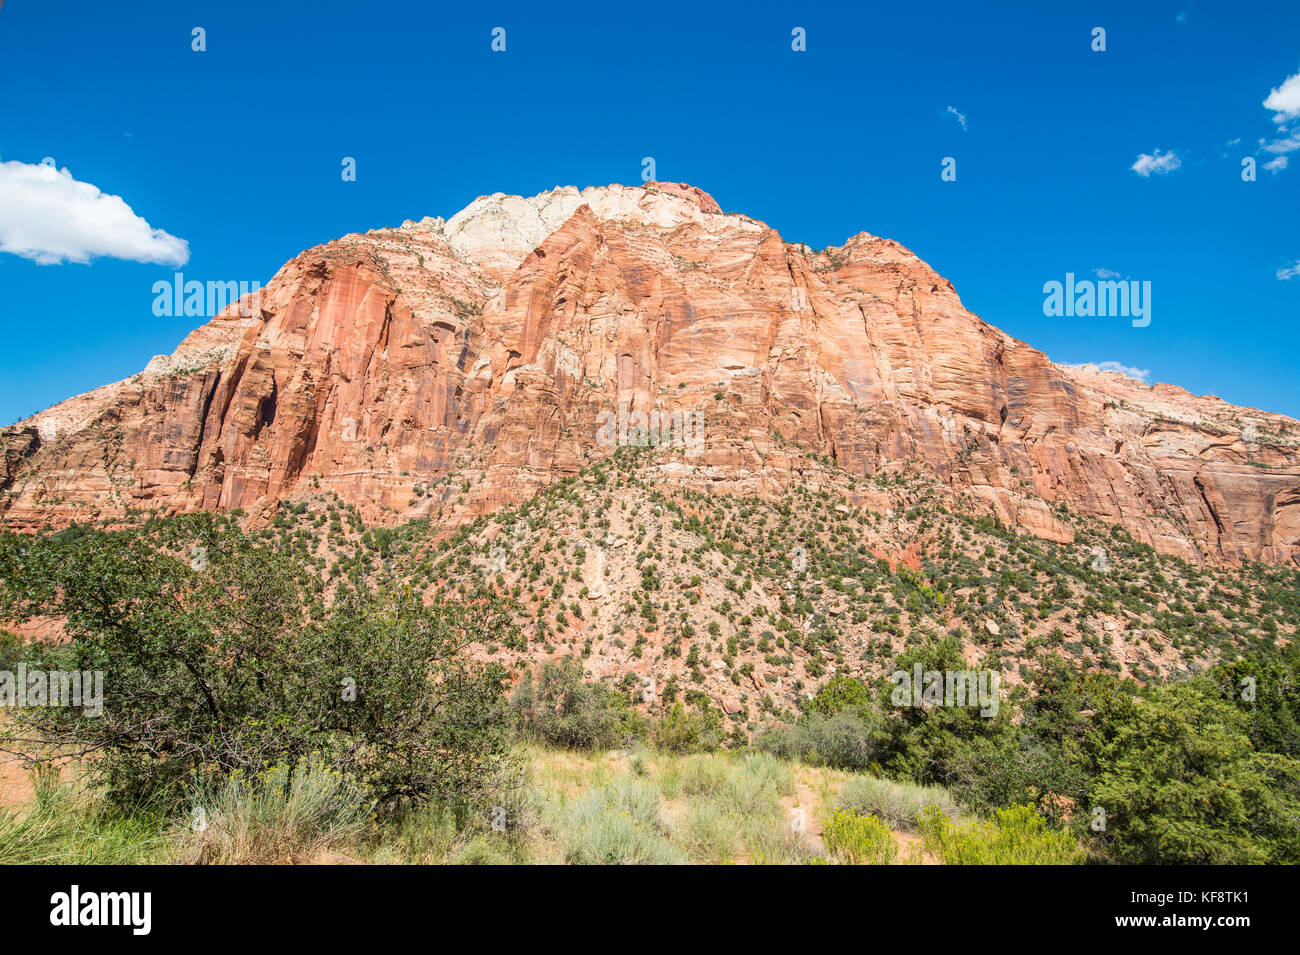 Sandstone rocks in the Zion National Park, Utah, USA Stock Photo